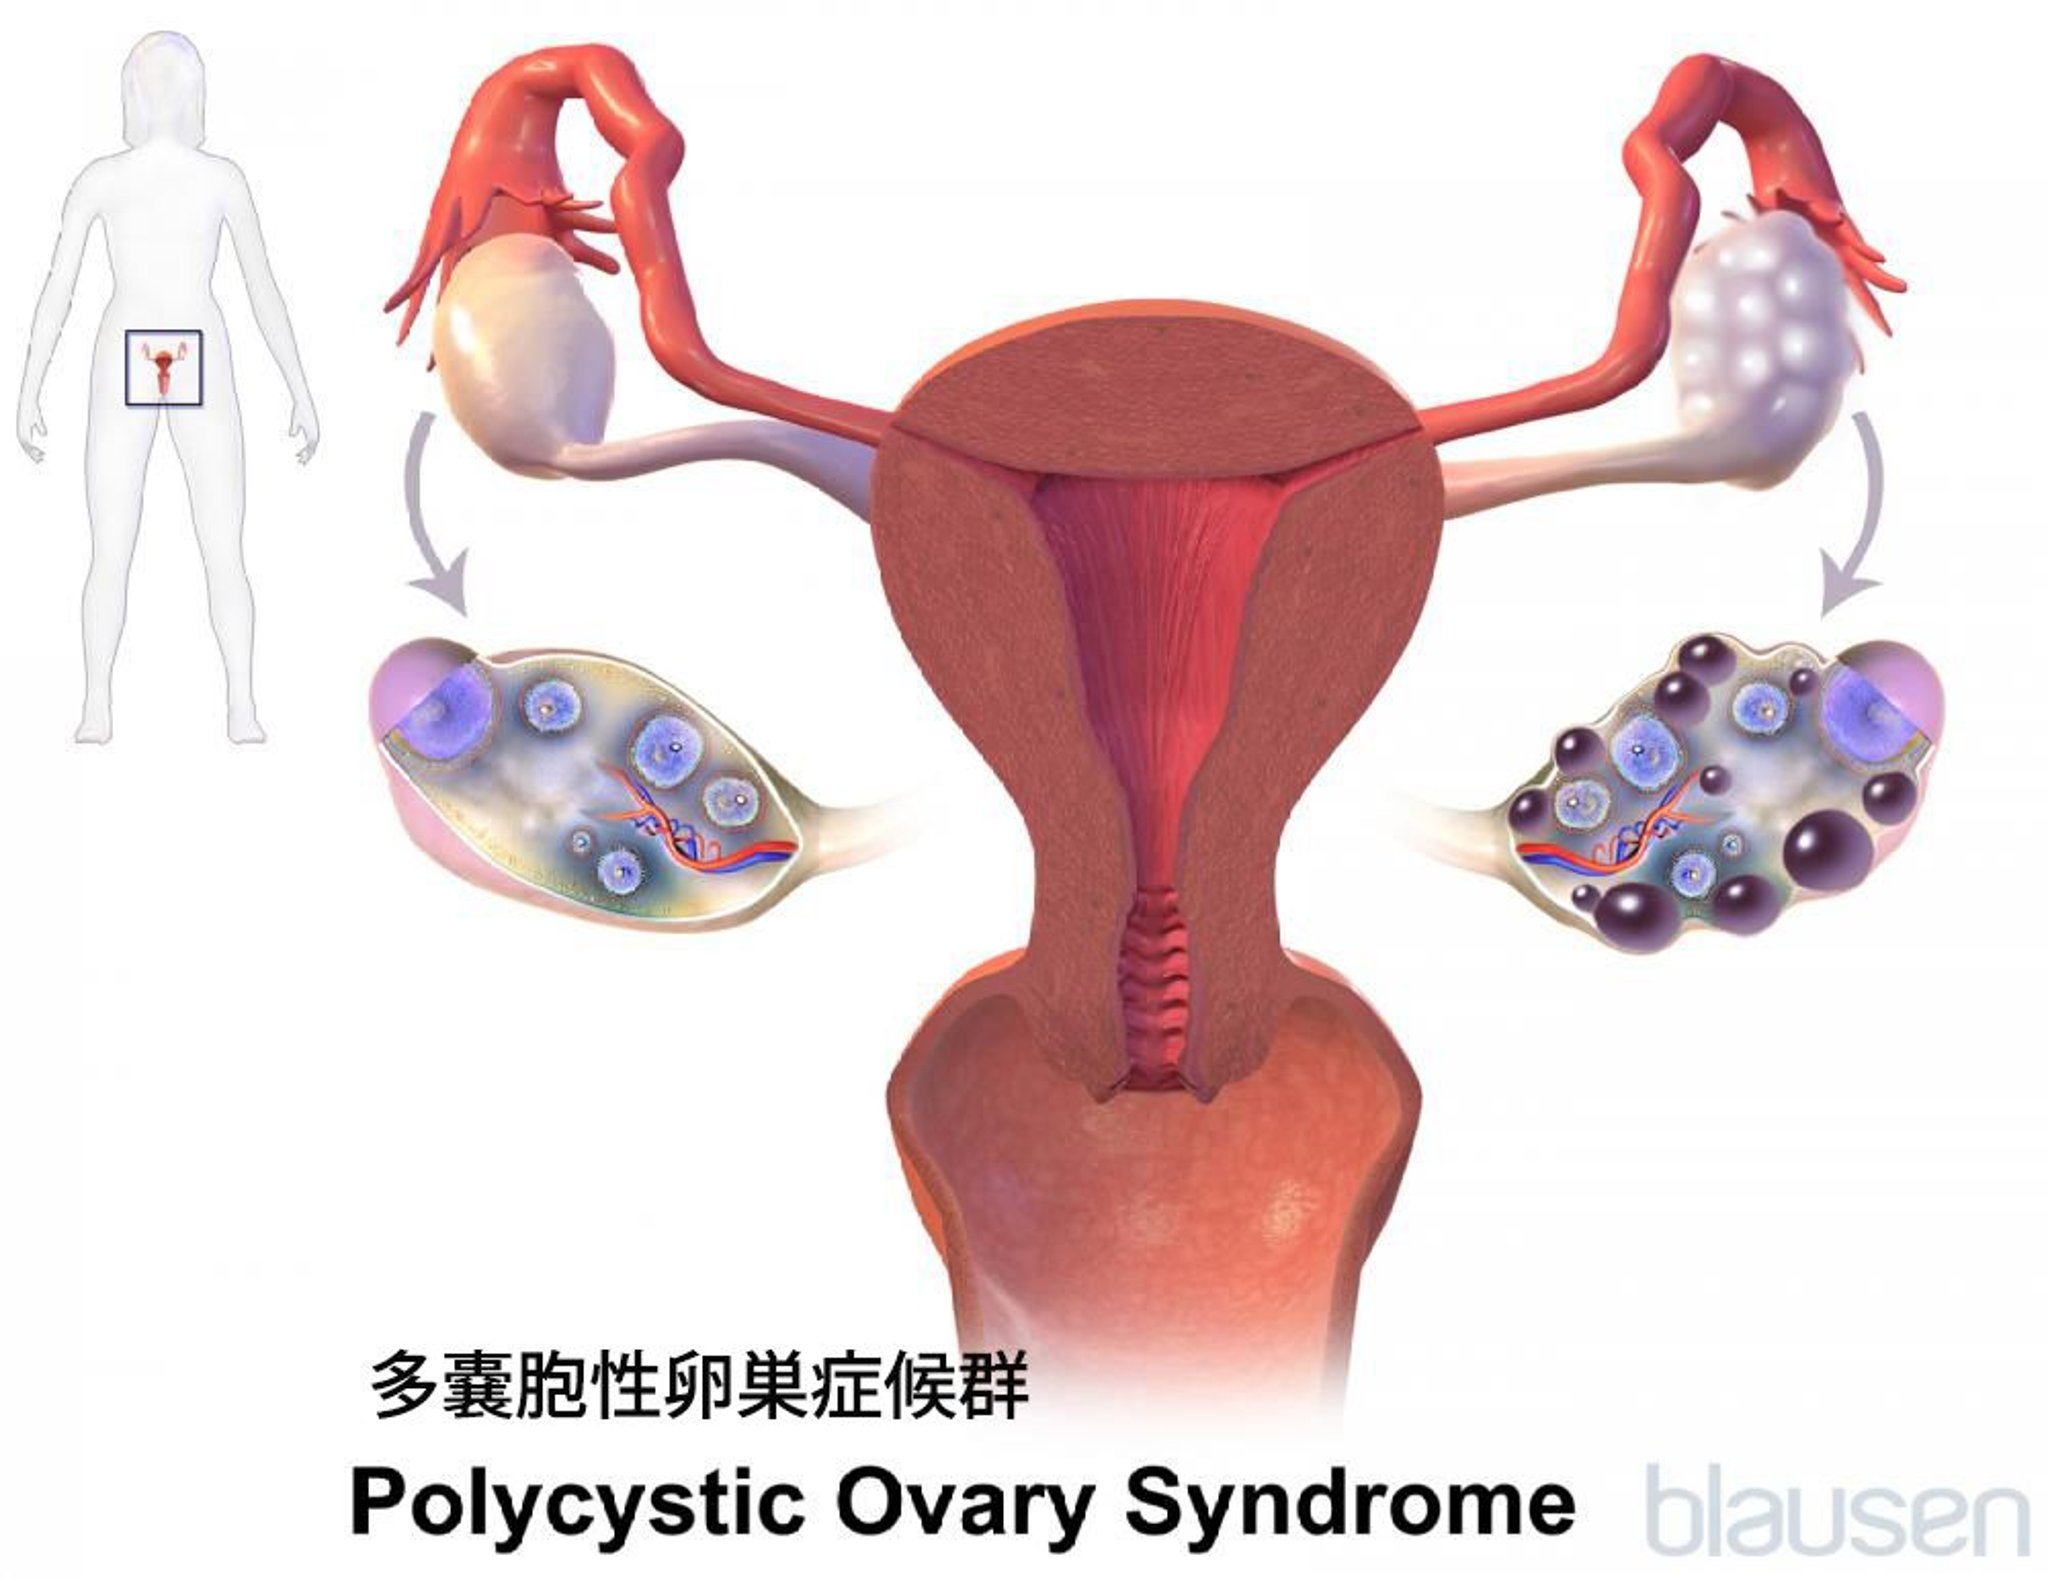 多嚢胞性卵巣症候群（PCOS）